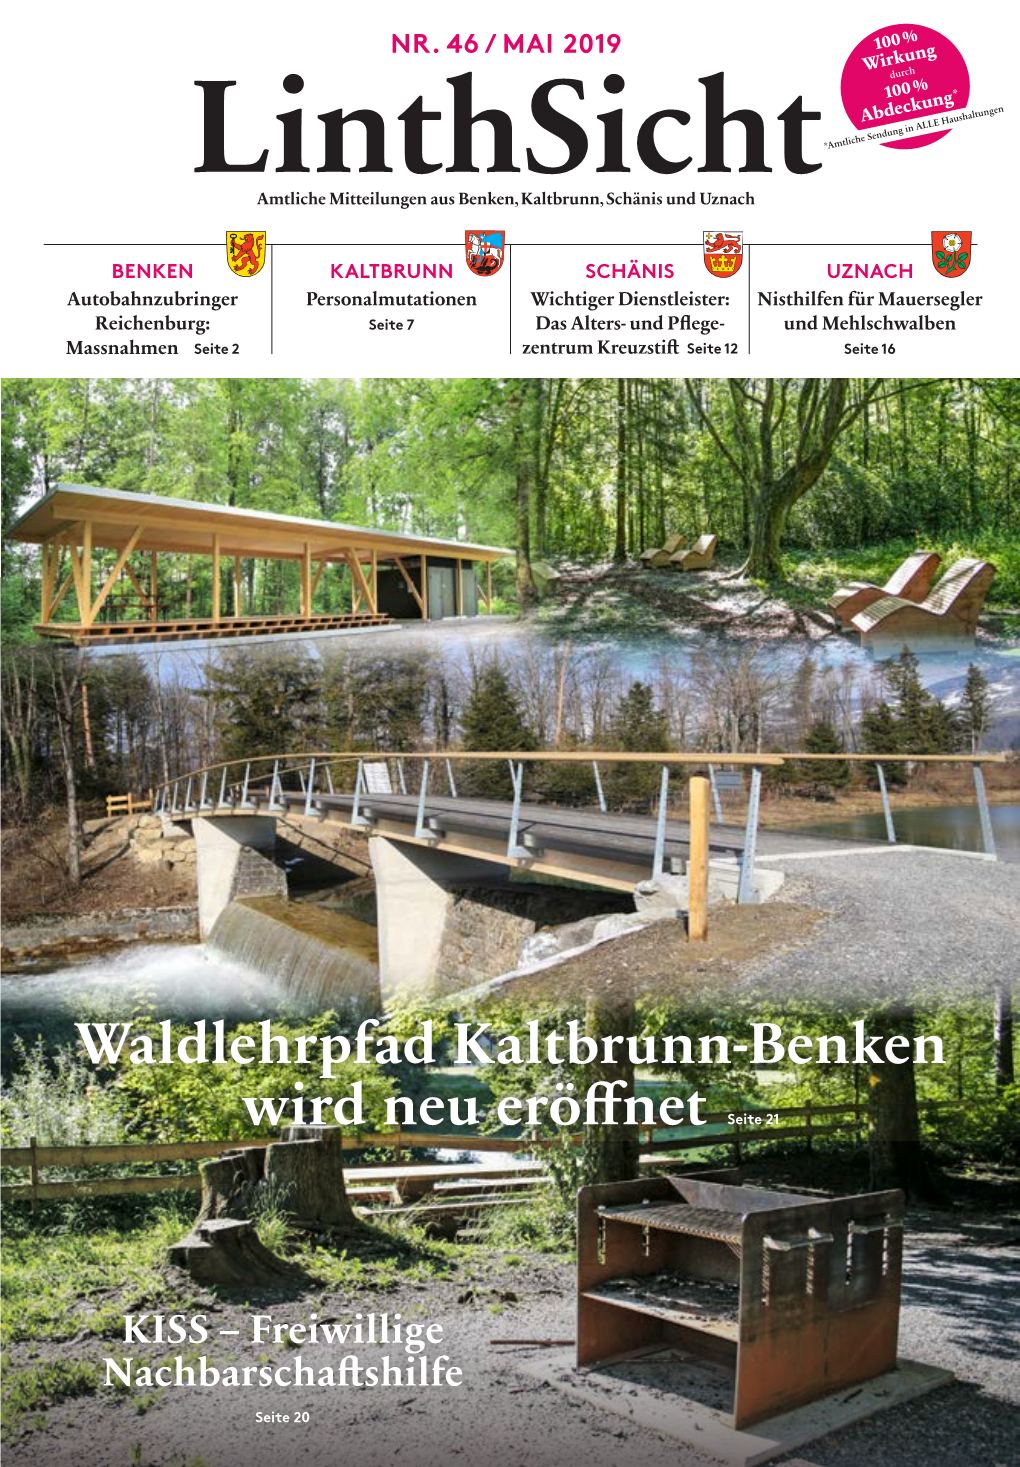 Waldlehrpfad Kaltbrunn-Benken Wird Neu Eröffnet Seite 21